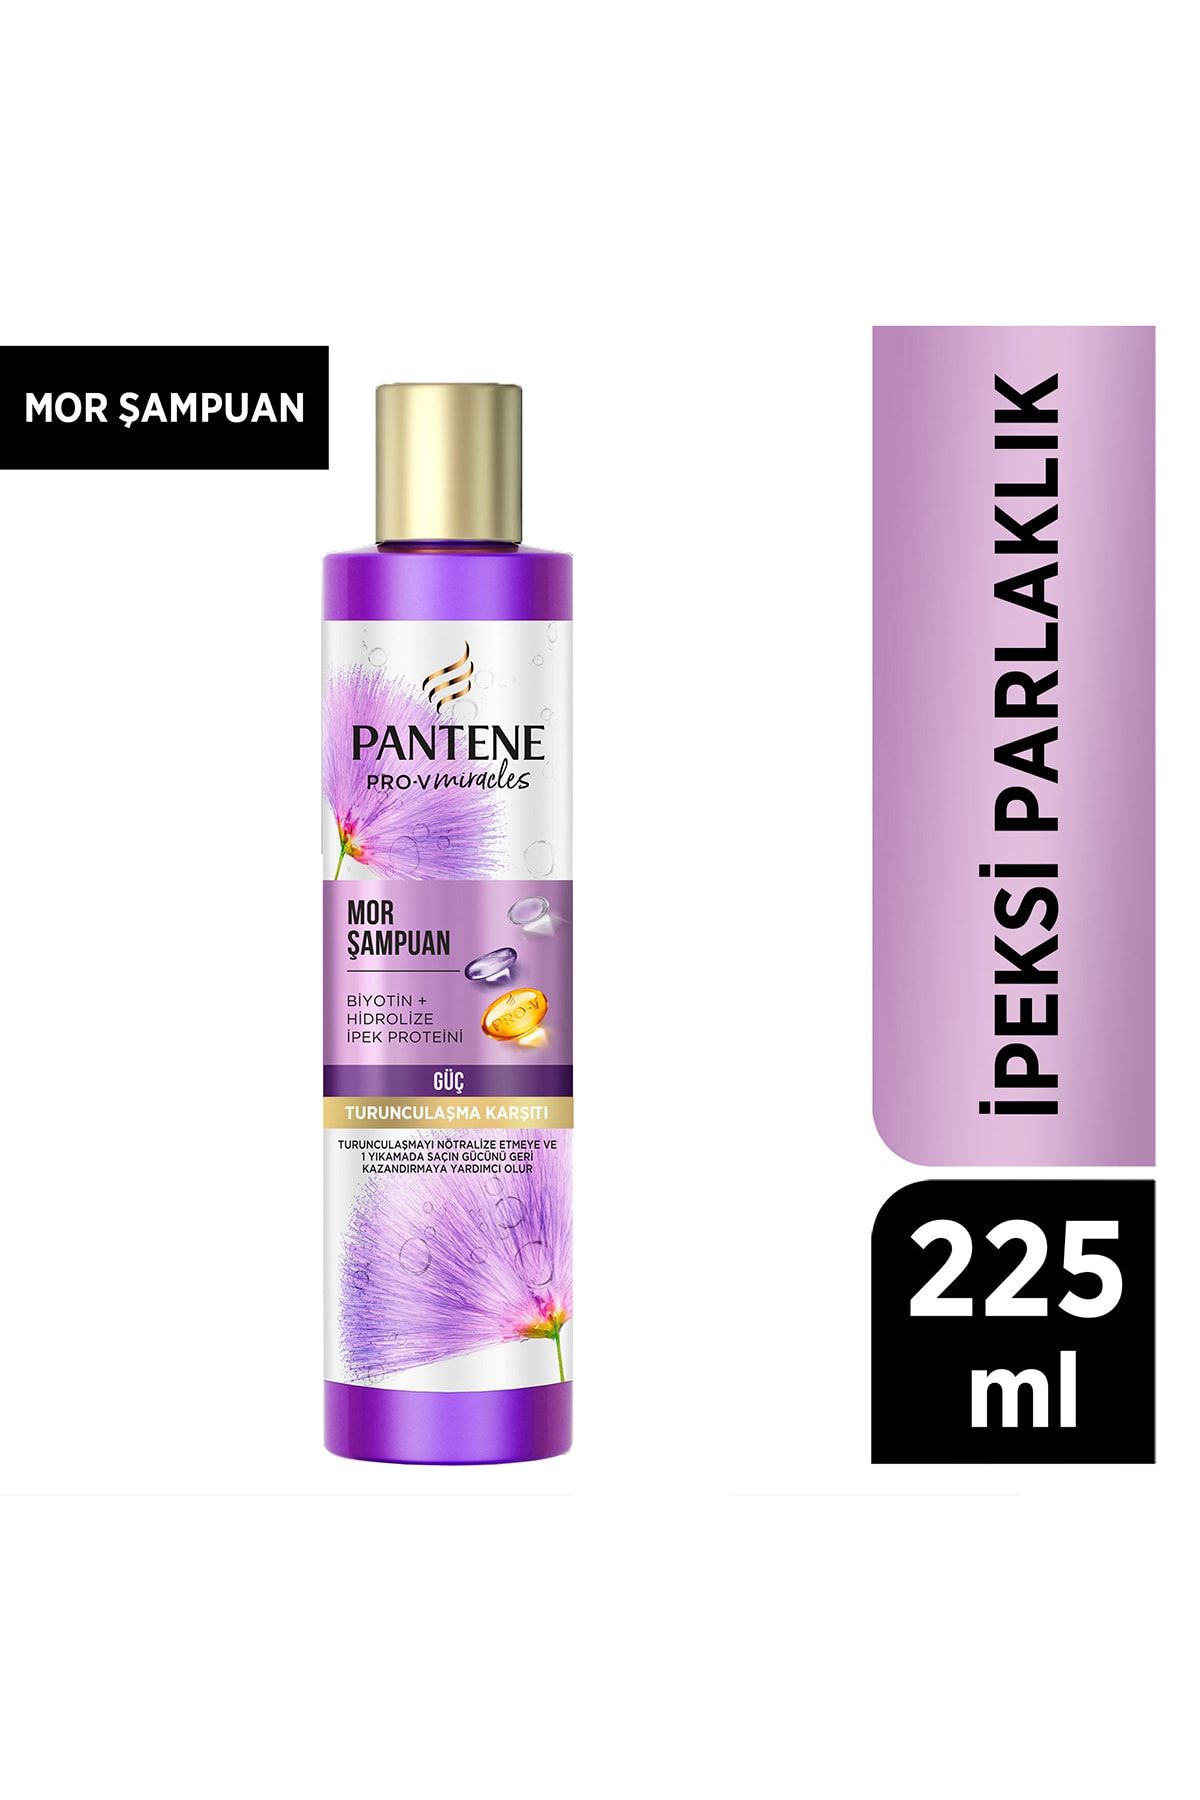 Pantene Pro-v Ipeksi Parlaklık Mor Şampuan, 225ml